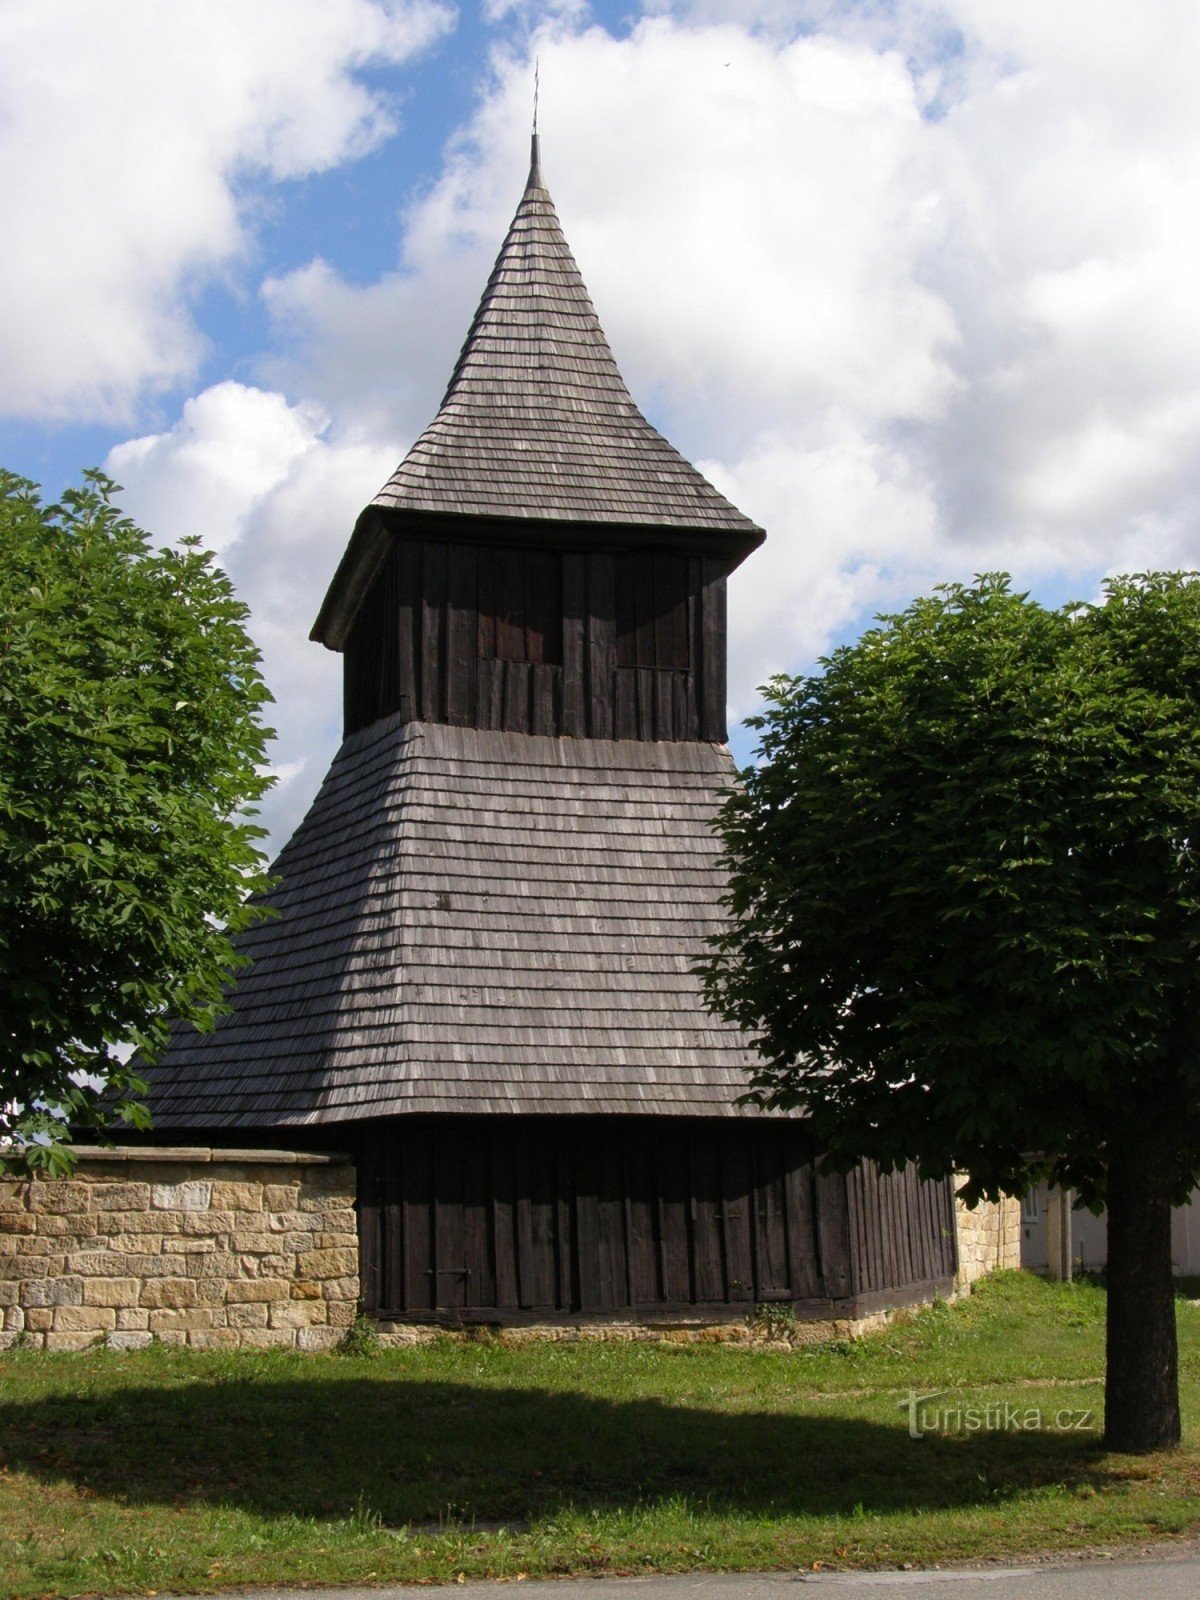 Vysočany - igreja de madeira de St. Mercados com campanário